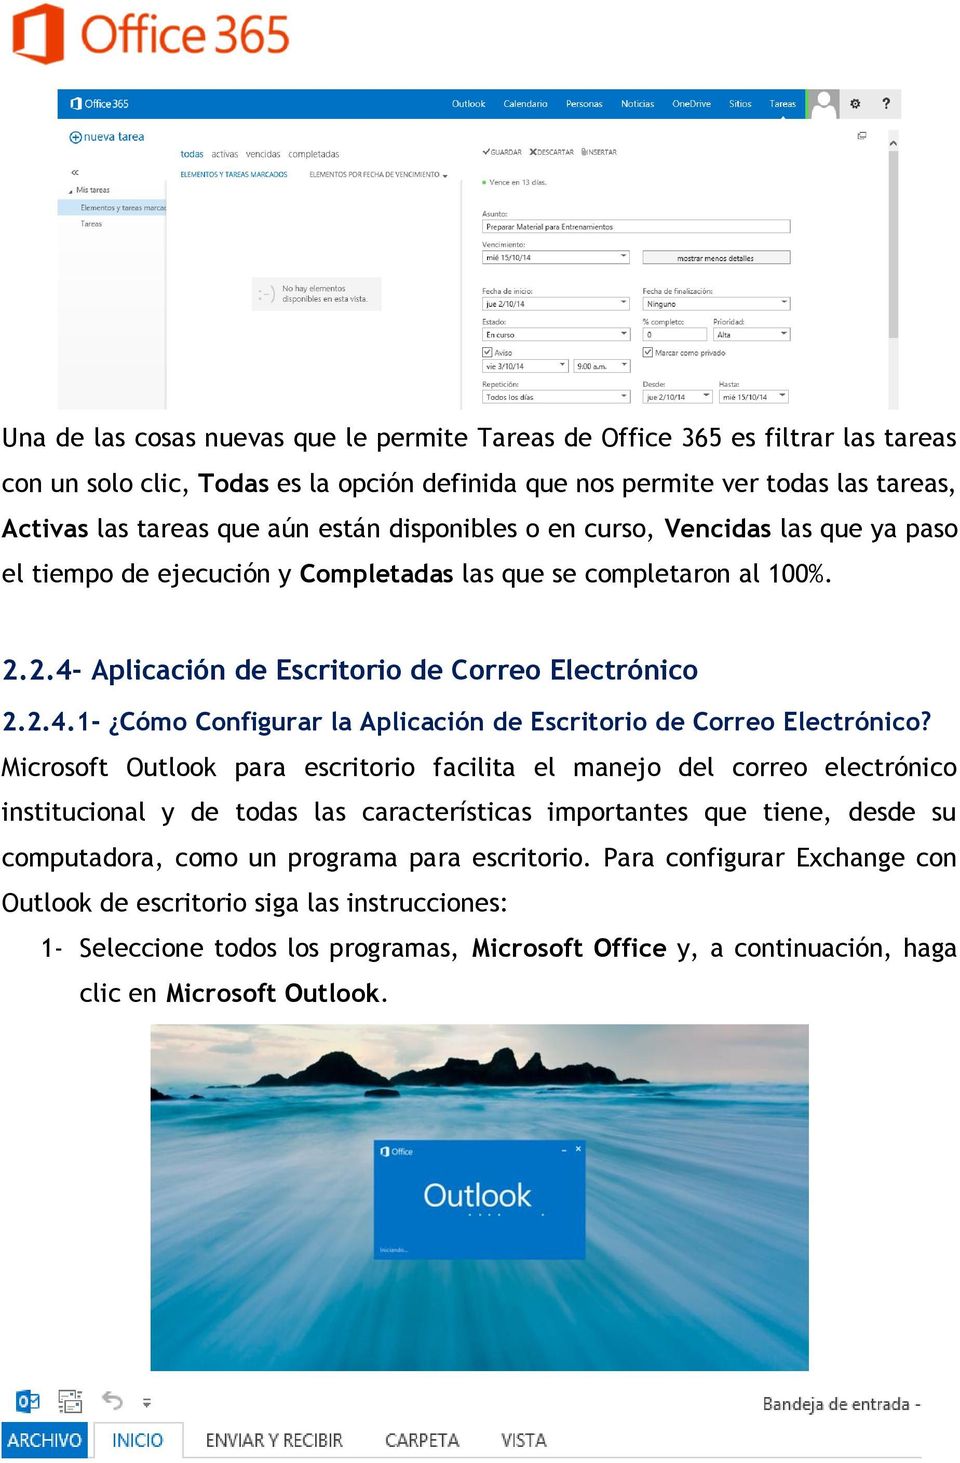 Microsoft Outlook para escritorio facilita el manejo del correo electrónico institucional y de todas las características importantes que tiene, desde su computadora, como un programa para escritorio.